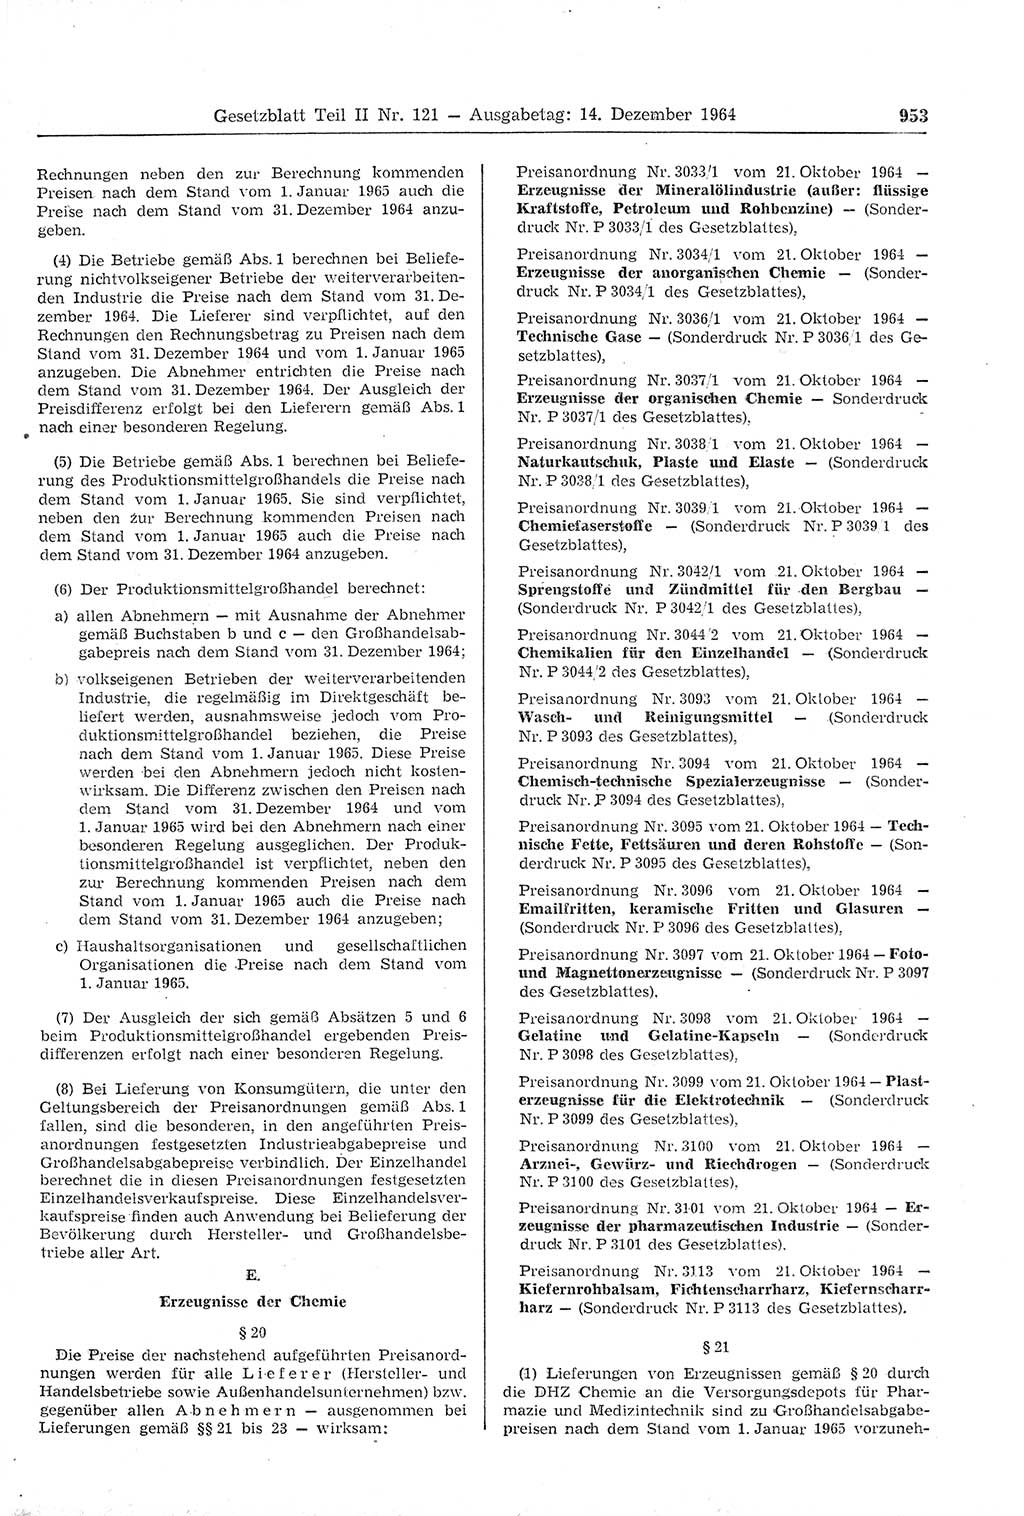 Gesetzblatt (GBl.) der Deutschen Demokratischen Republik (DDR) Teil ⅠⅠ 1964, Seite 953 (GBl. DDR ⅠⅠ 1964, S. 953)